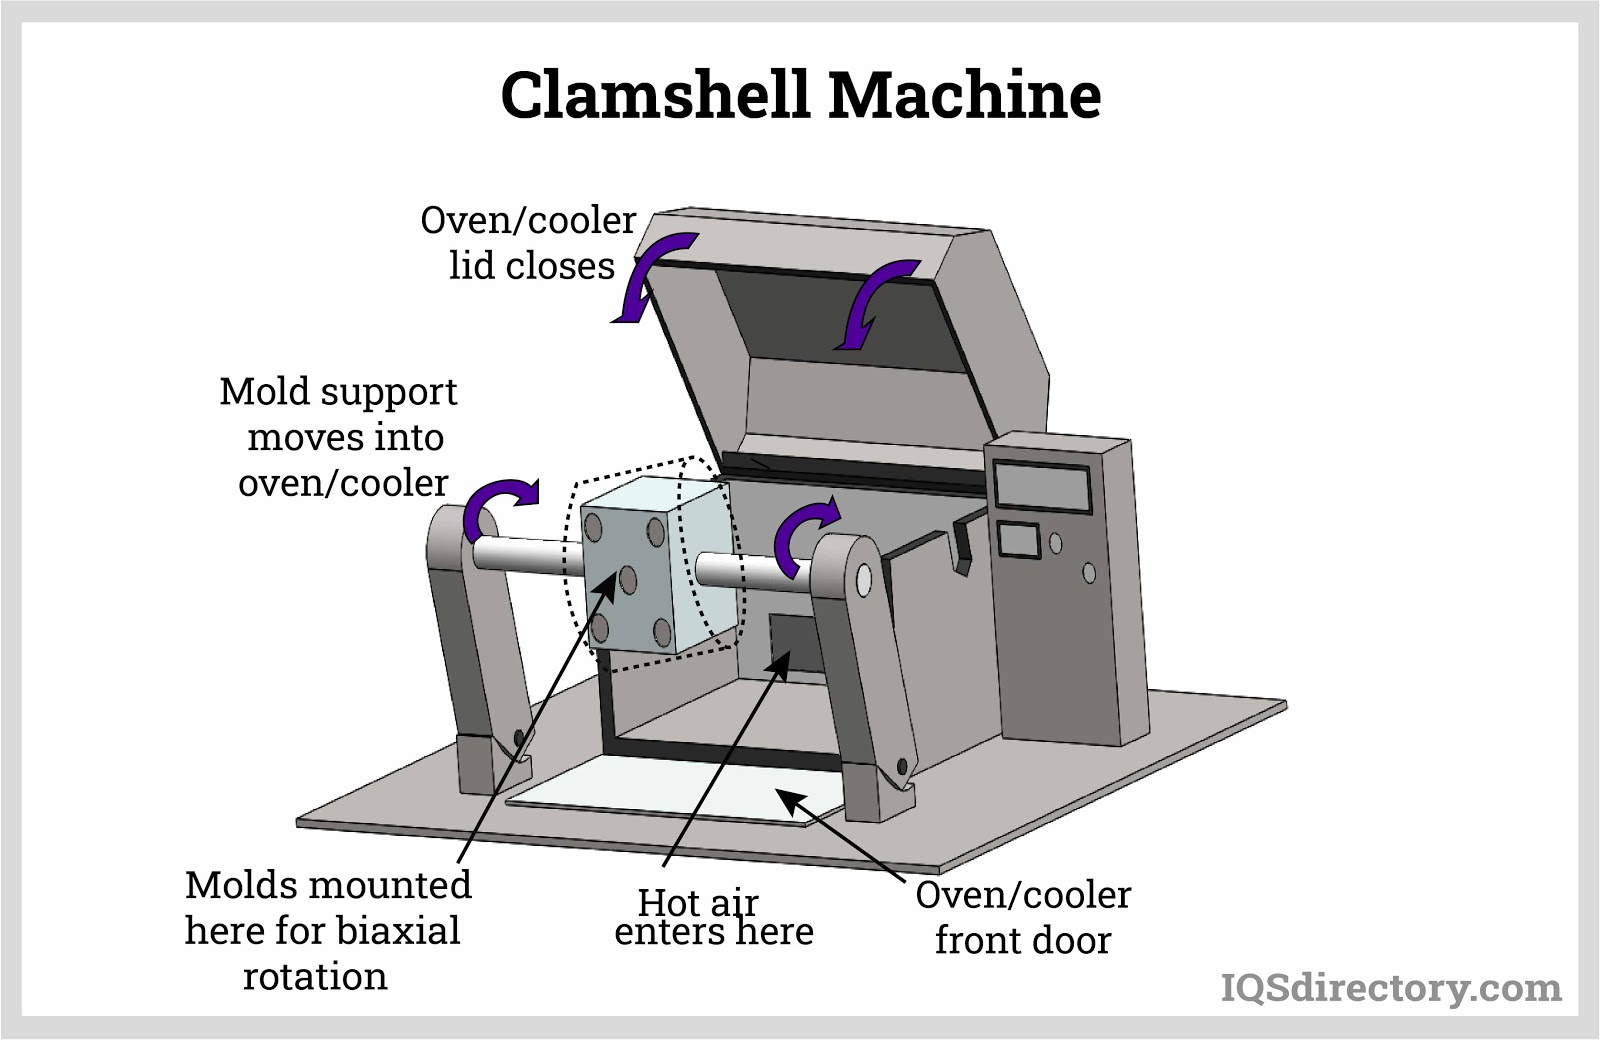 Clamshell Machine